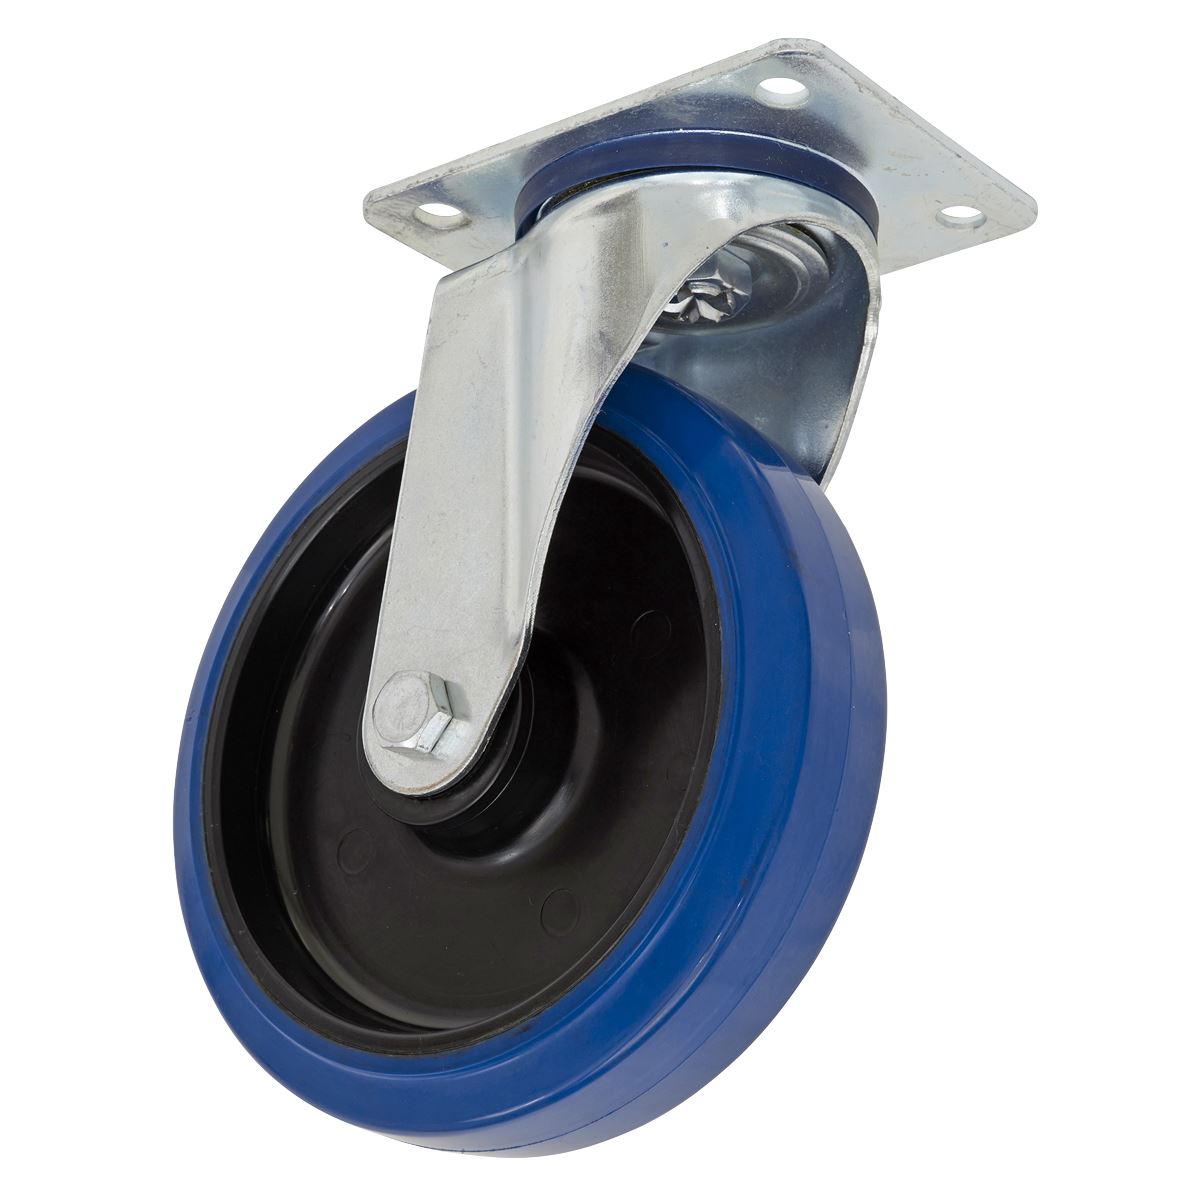 Sealey Heavy-Duty Blue Elastic Rubber Swivel Castor Wheel Ø125mm - Trade